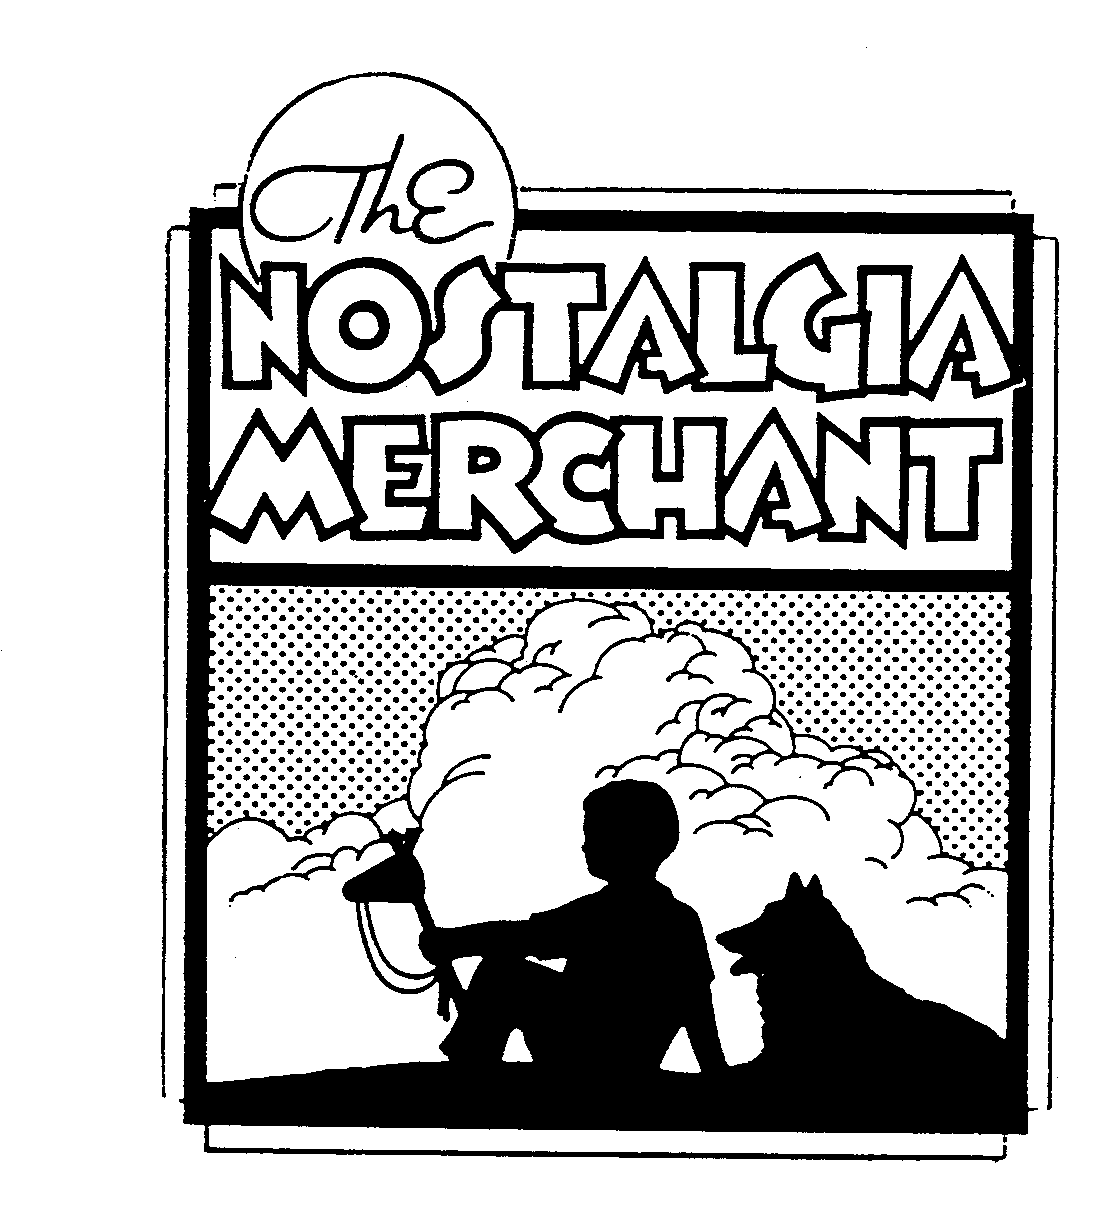  THE NOSTALGIA MERCHANT